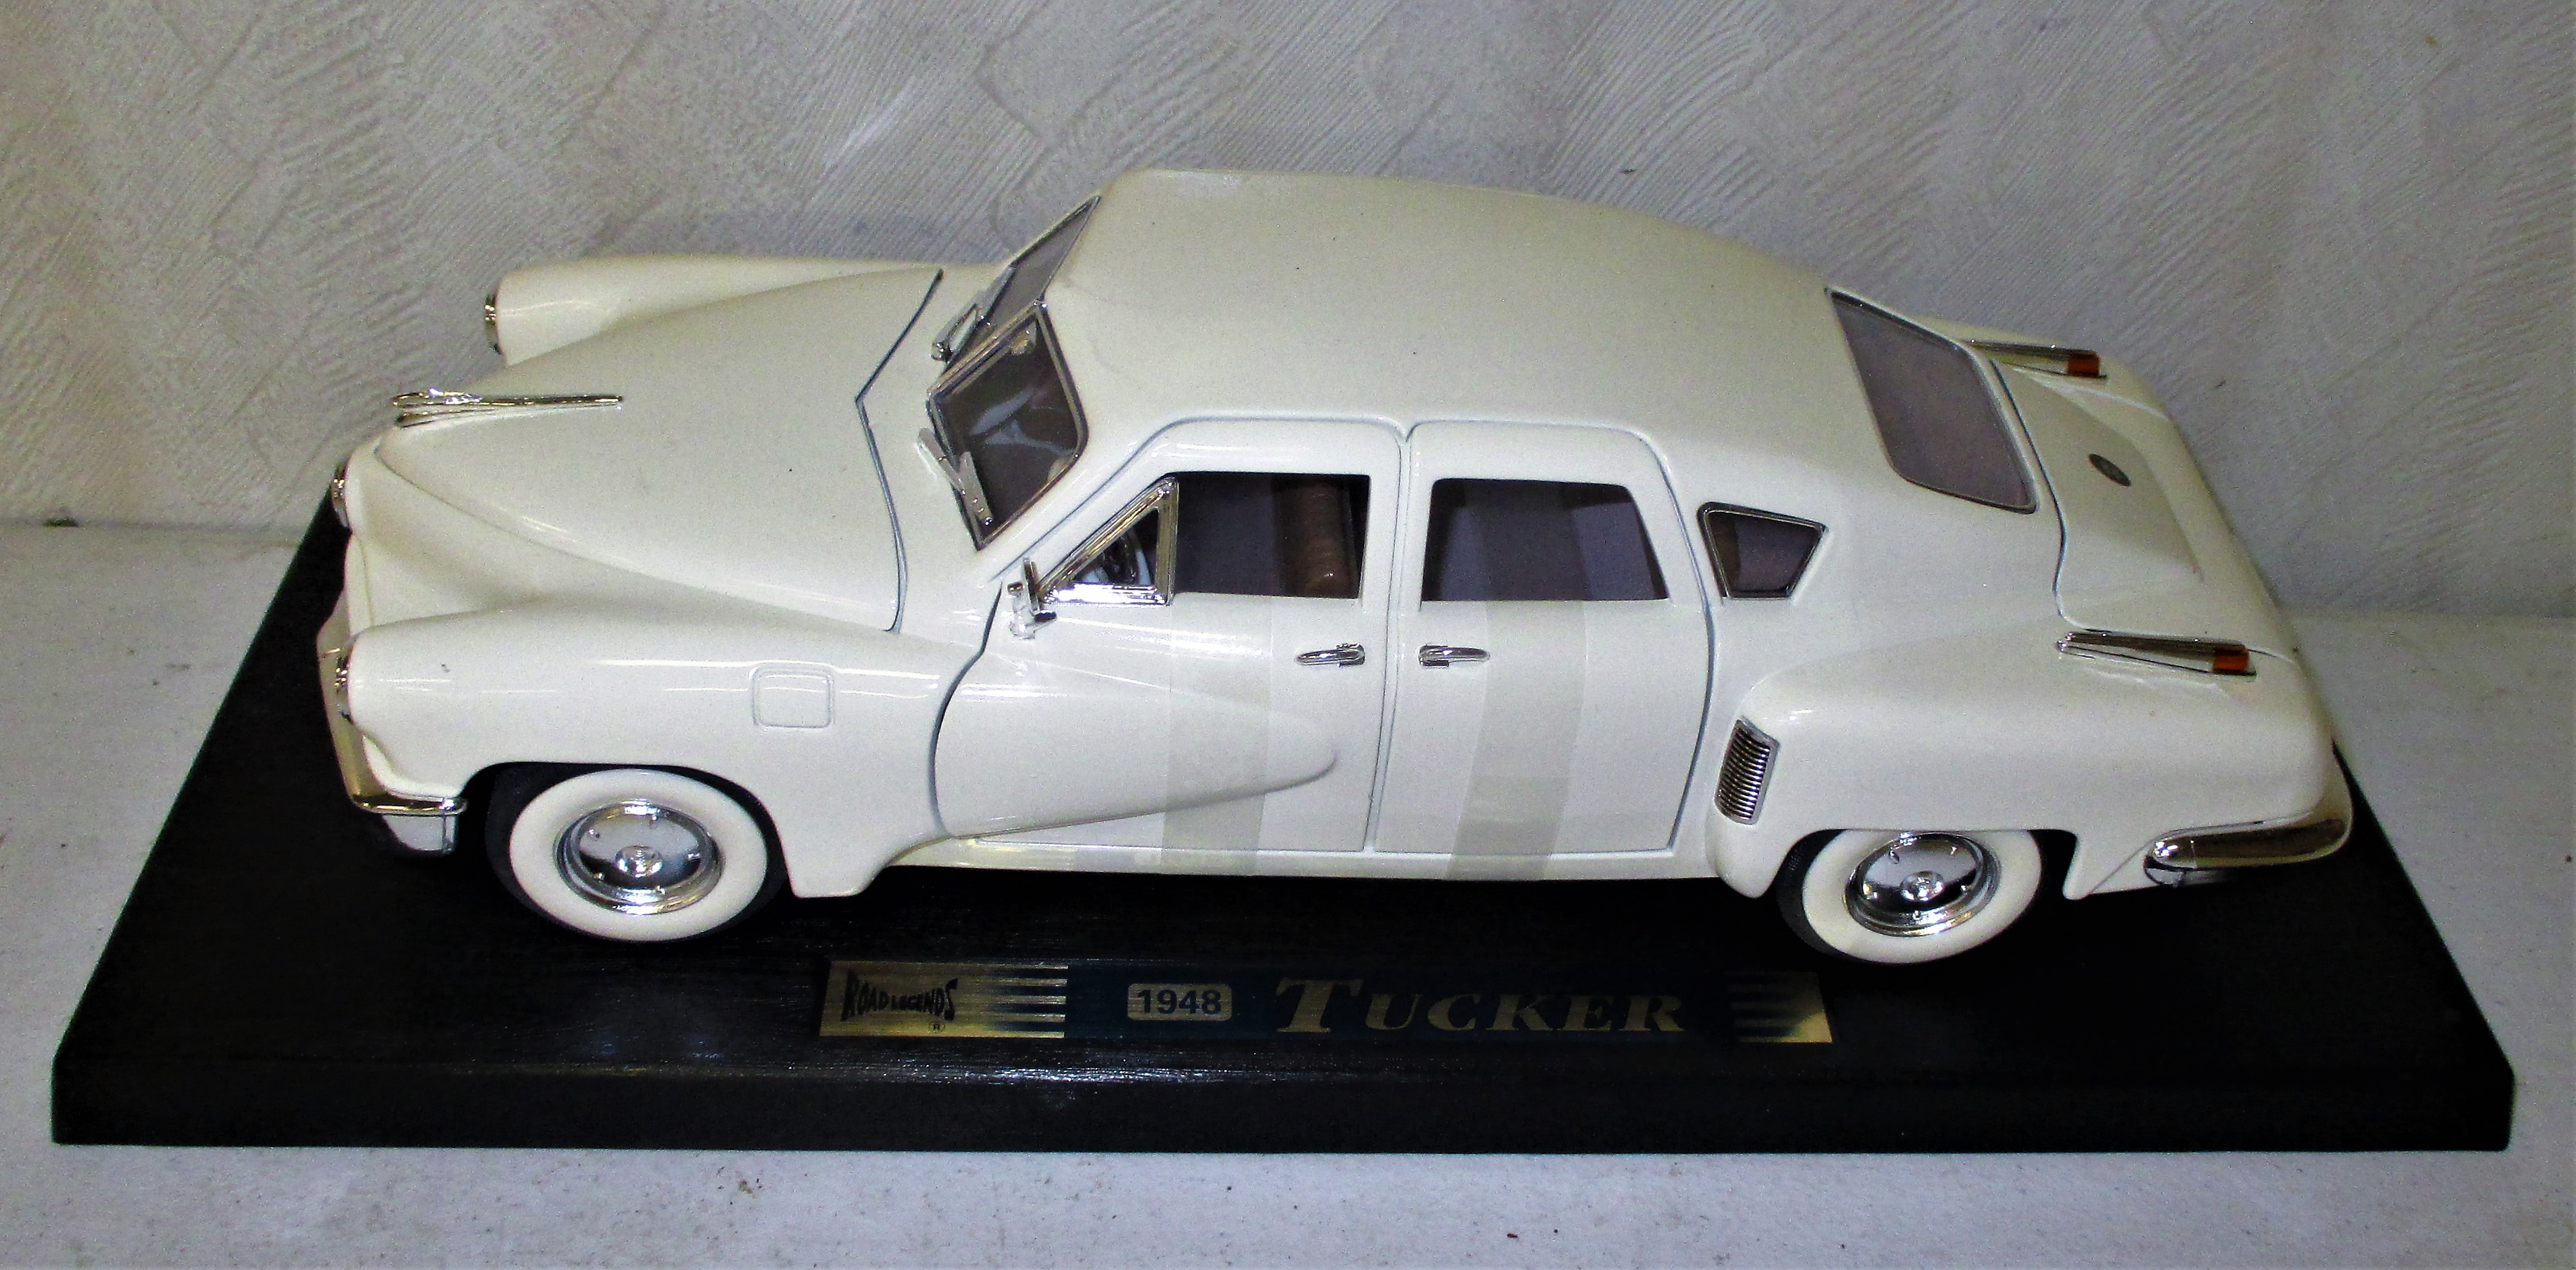 162: 1948 Tucker Diecast Model